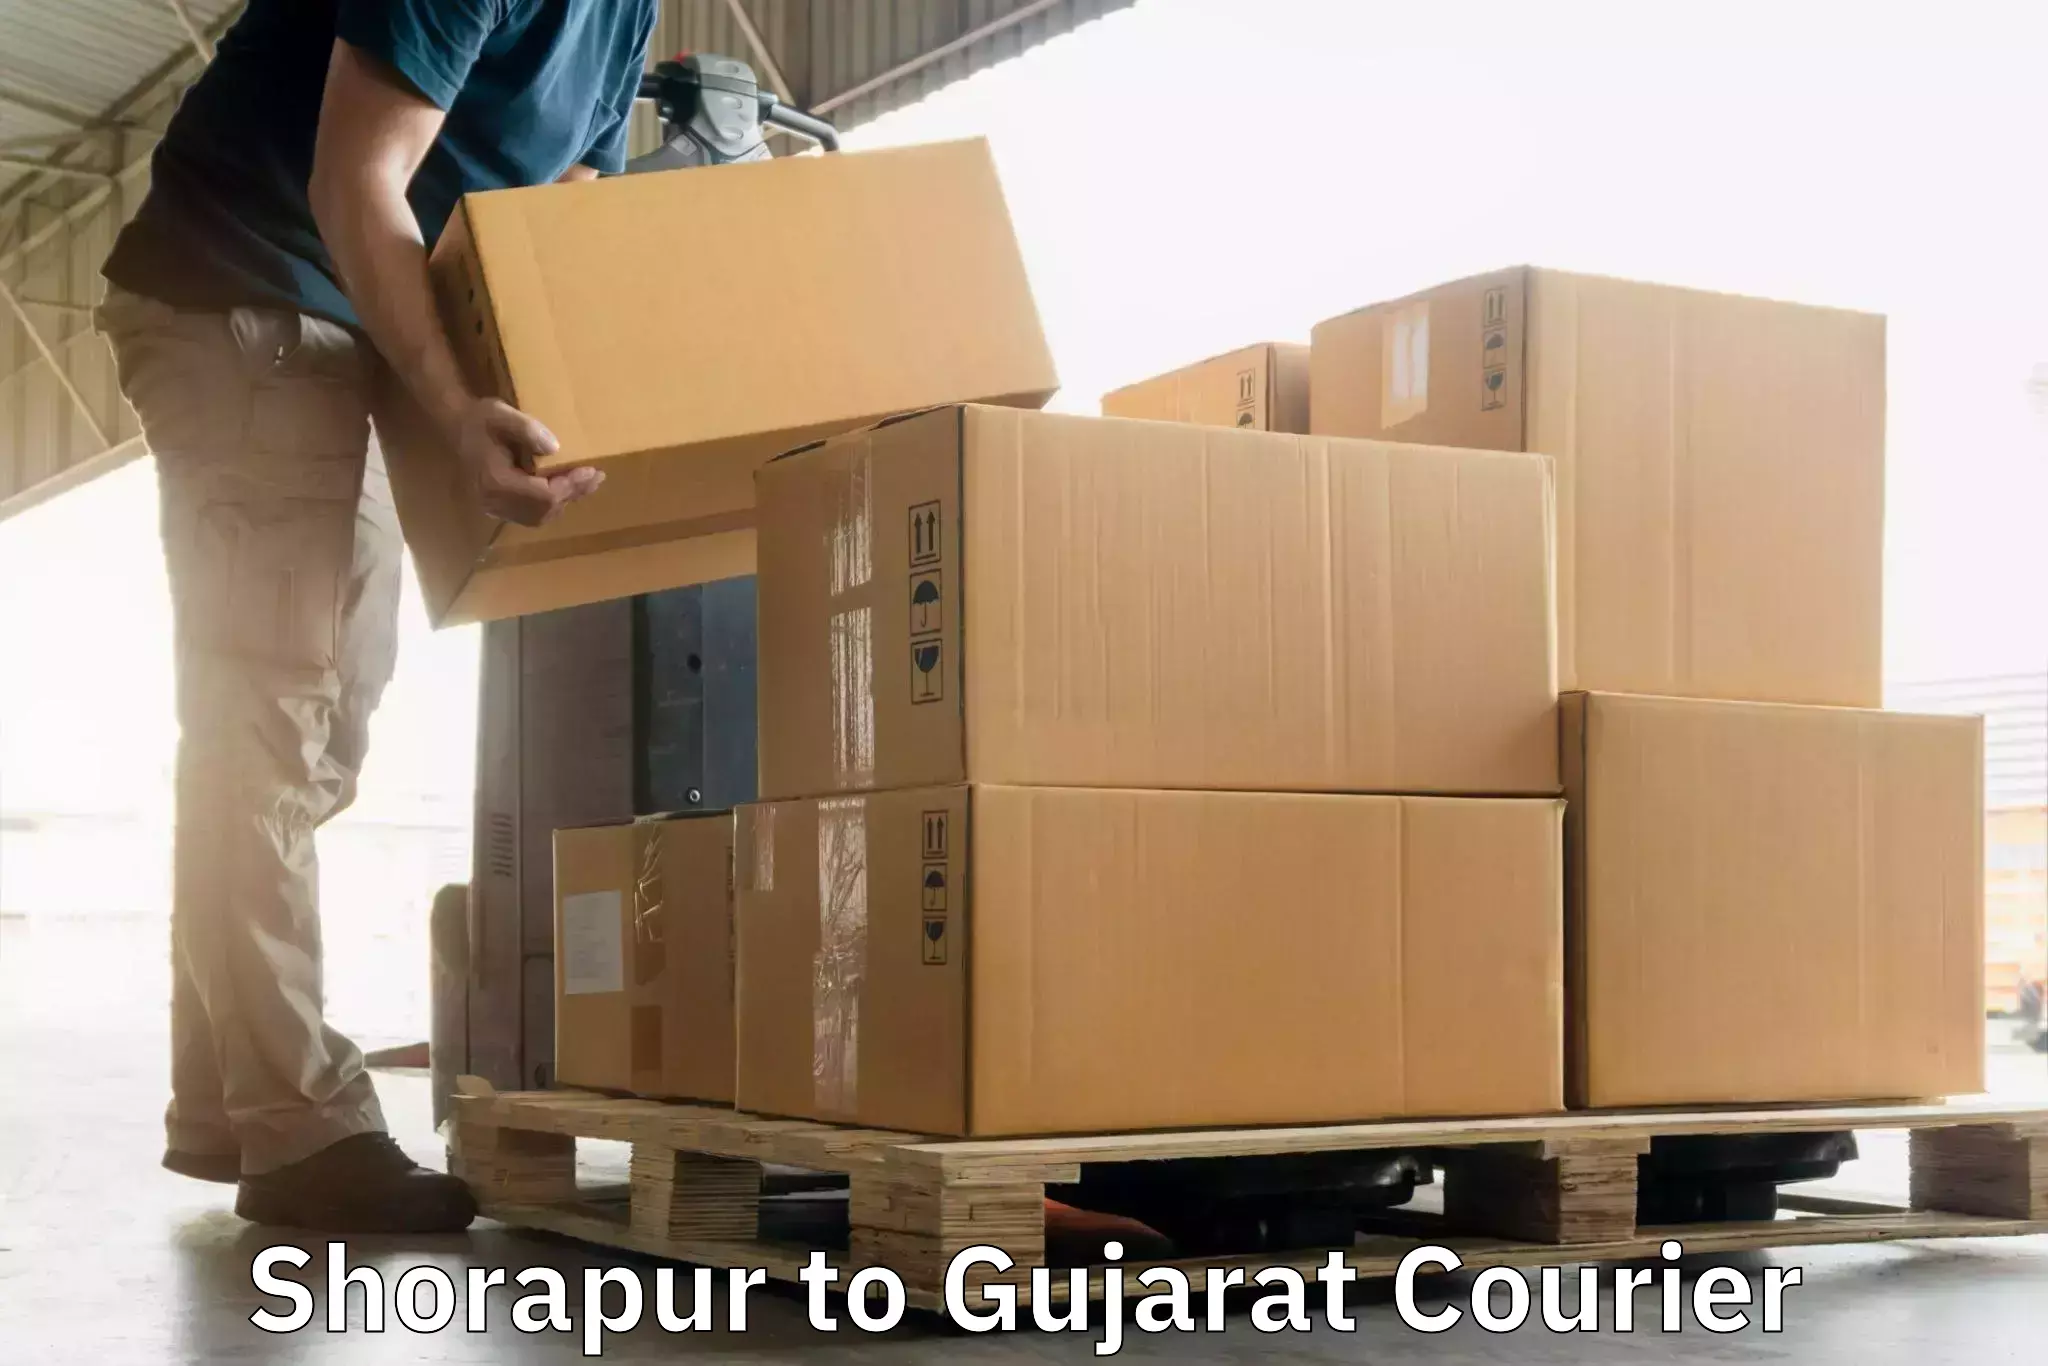 Doorstep delivery service Shorapur to Dhrangadhra